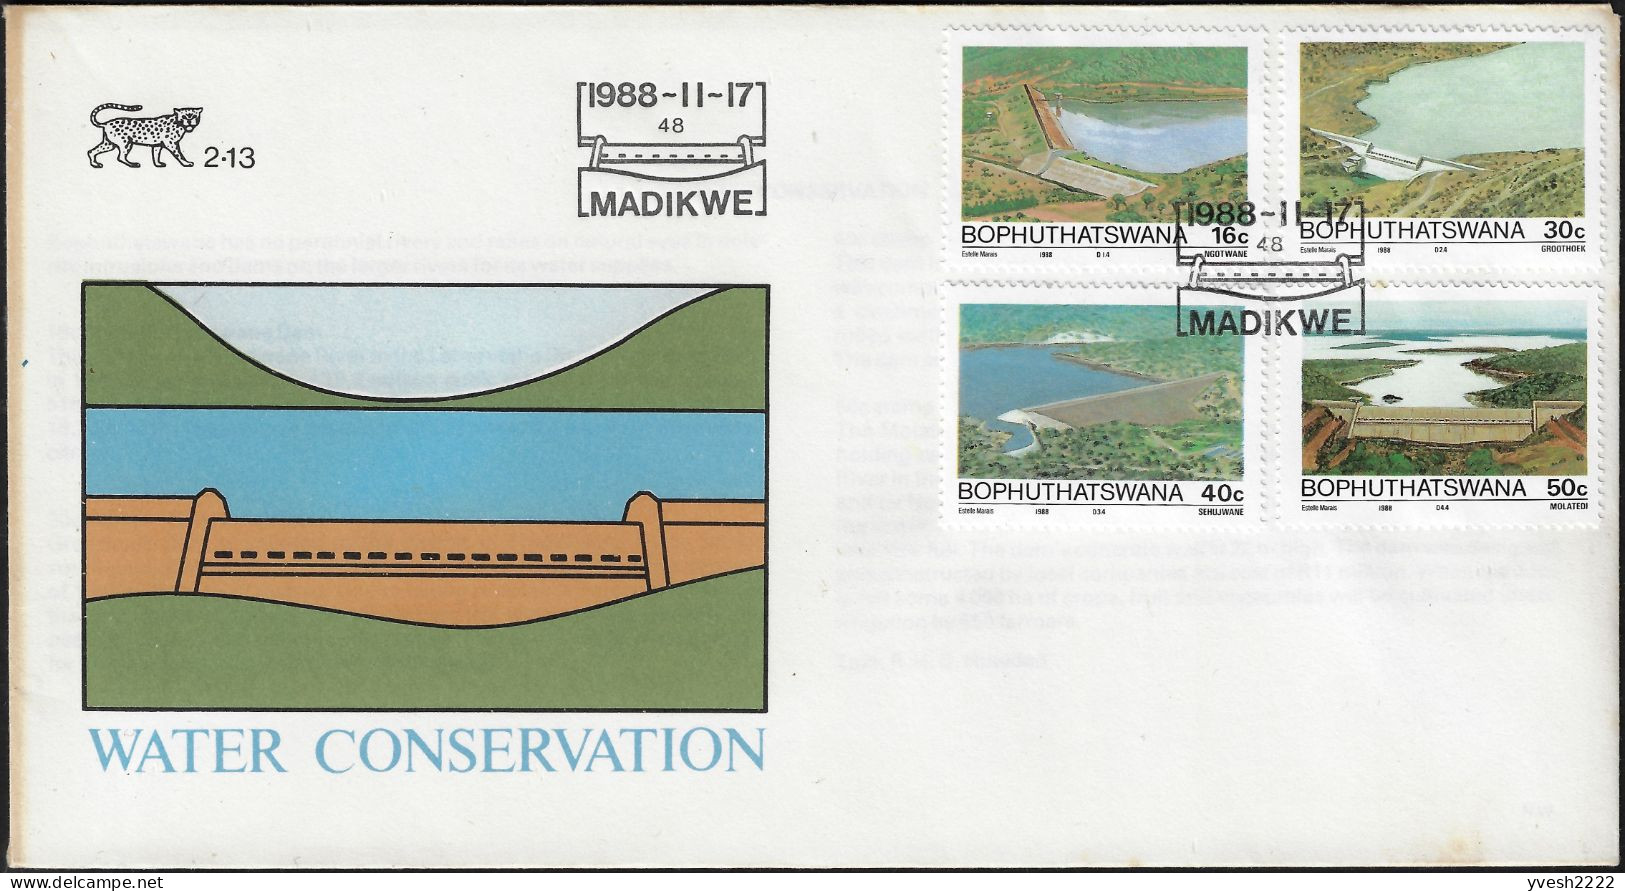 Bophuthatswana 1988 Y&T 210 à 213 Sur FDC. Conservation De L'eau, Barrages Et Réserves D'eau - Wasser